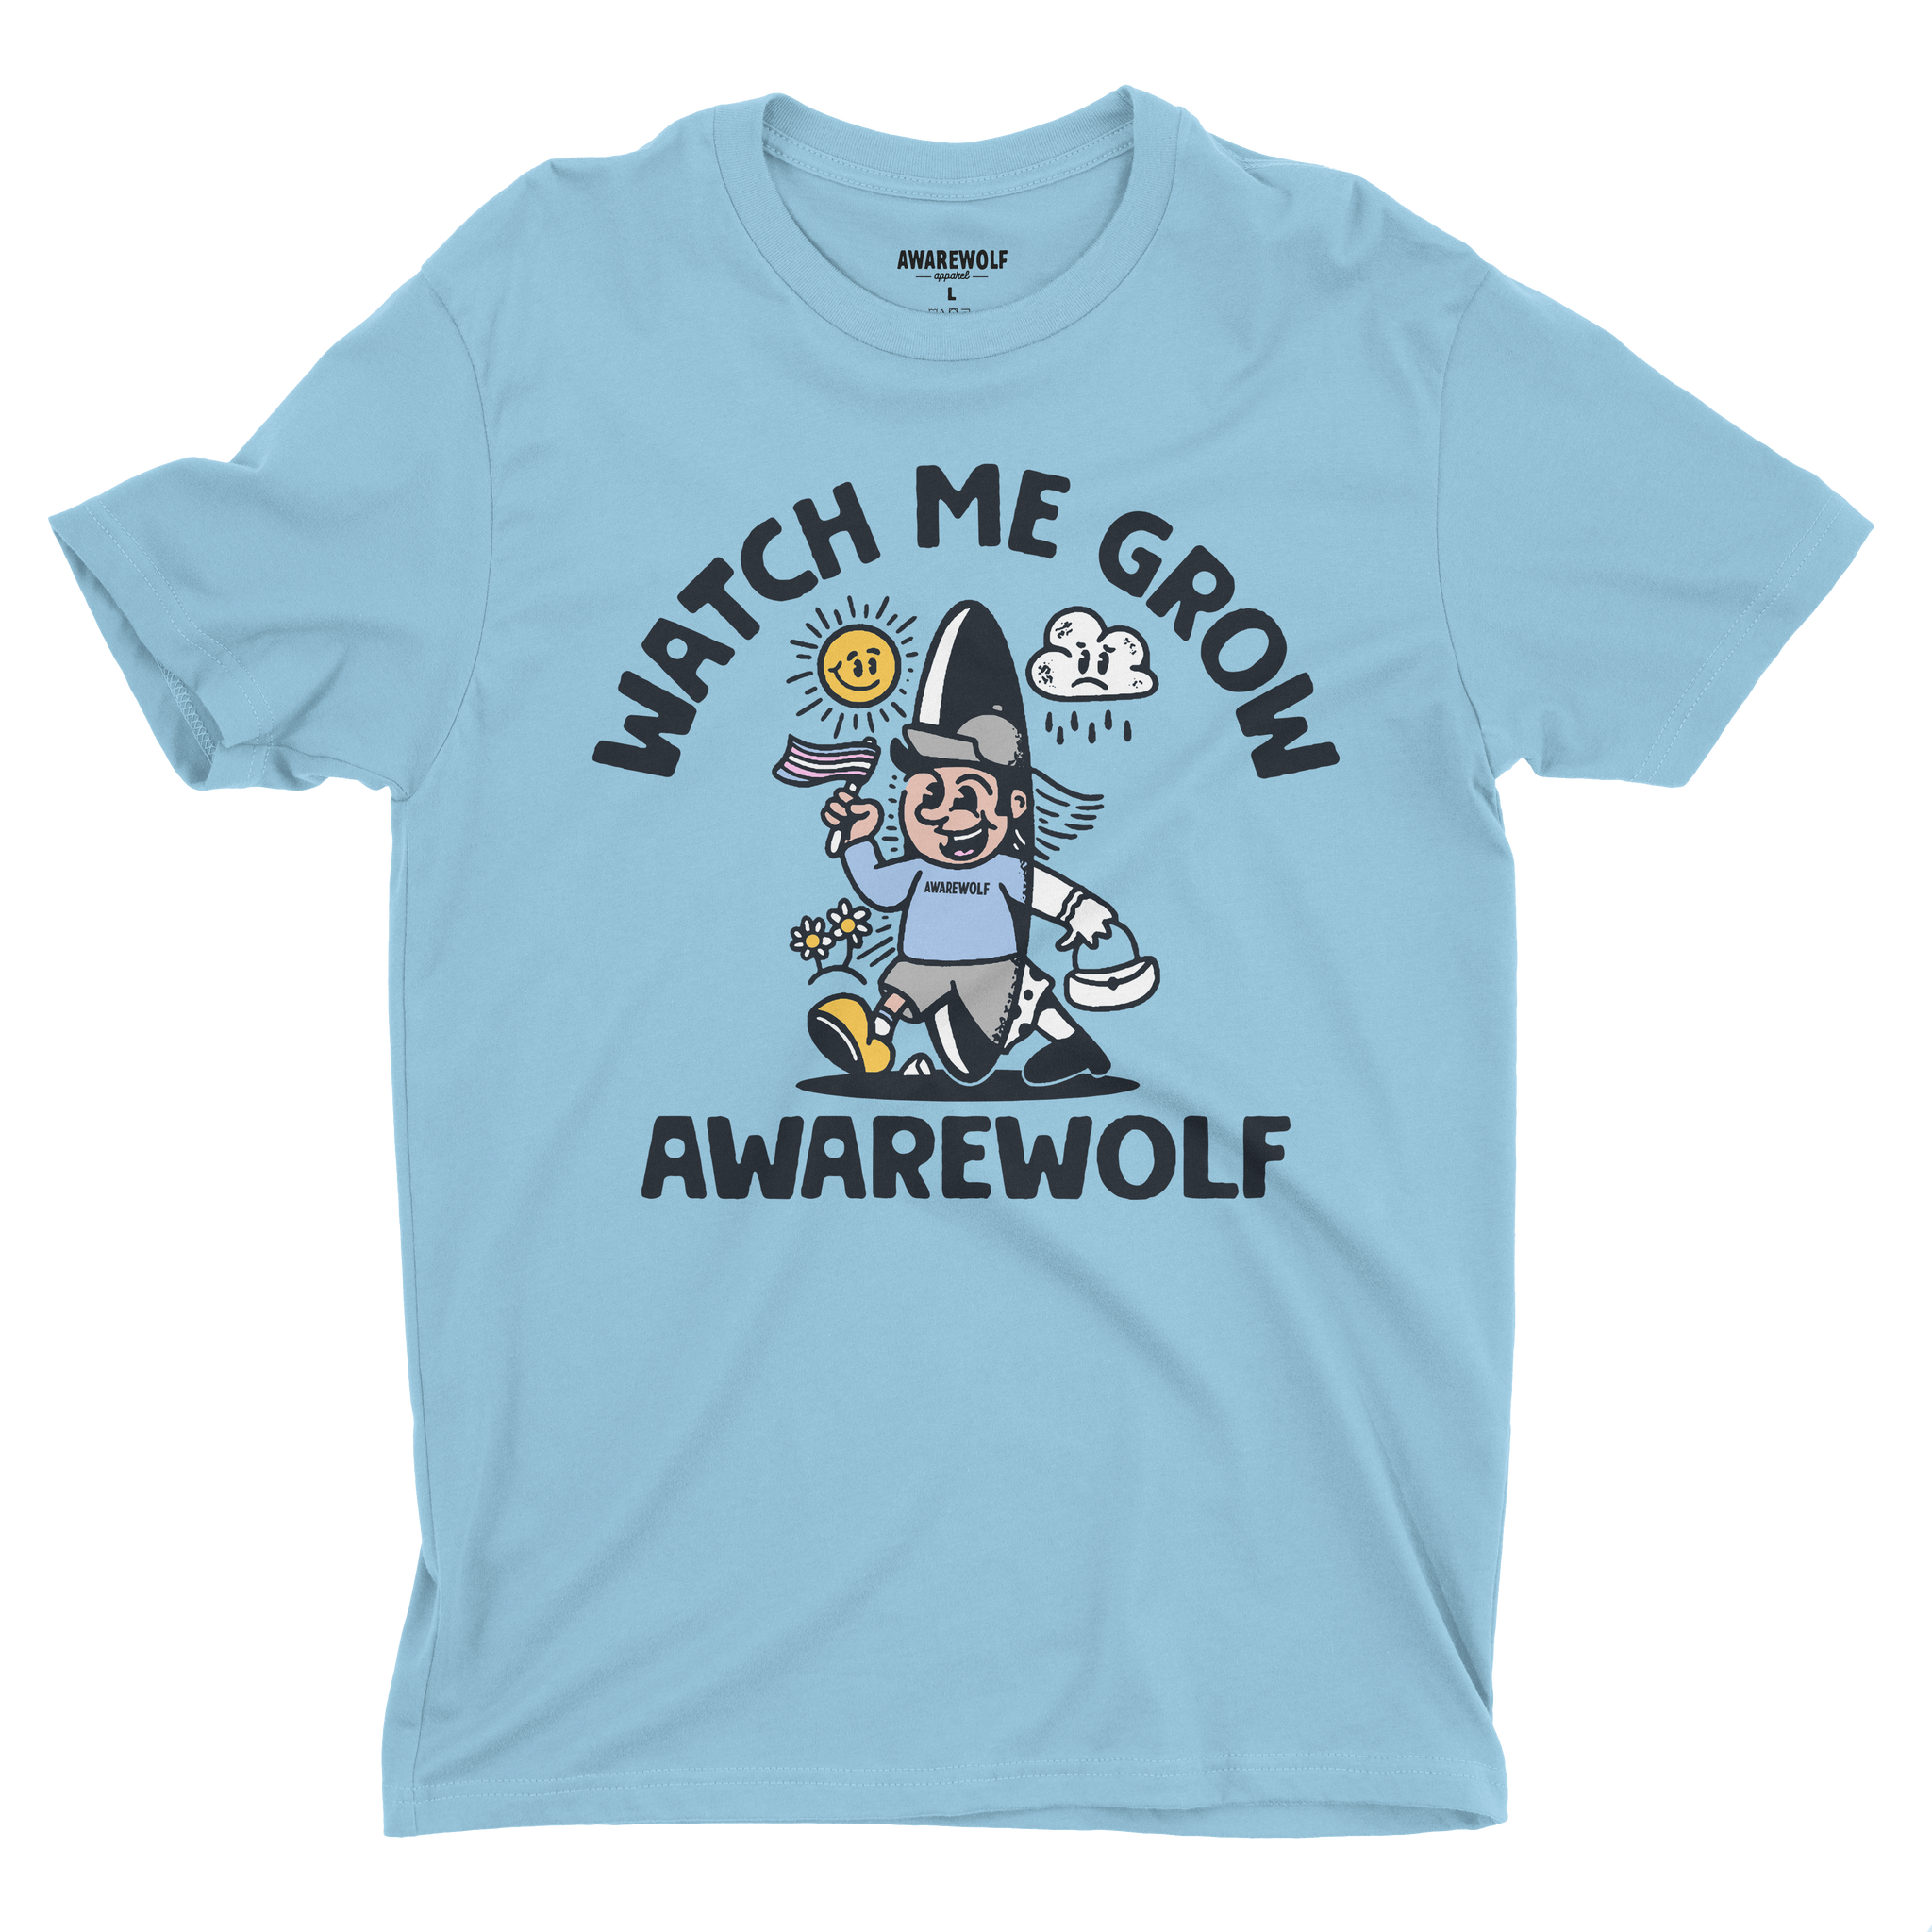 Watch Me Grow - Awarewolf Apparel